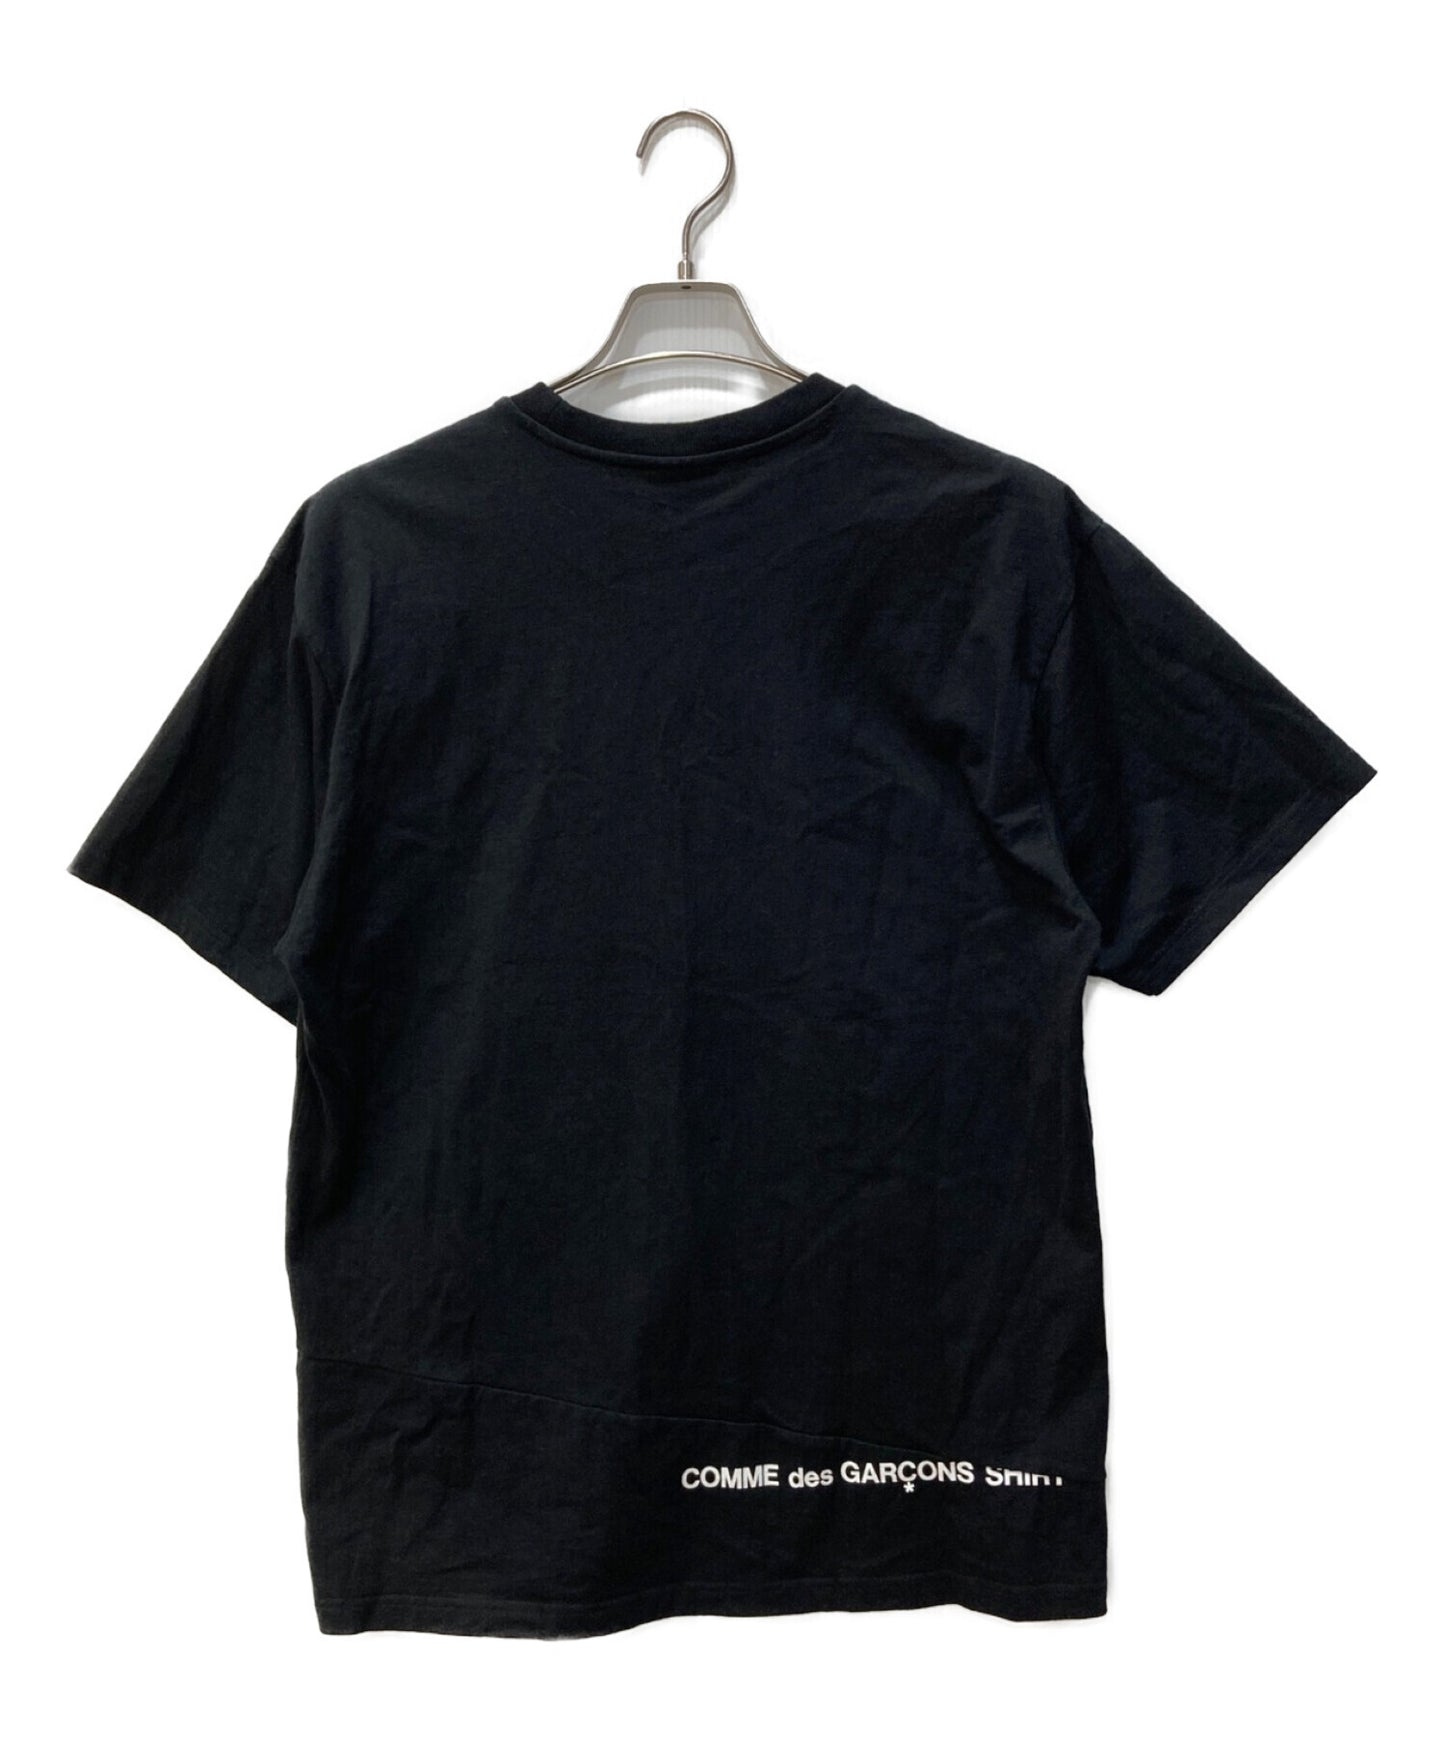 Supreme X Comme des Garcons衬衫合作T恤